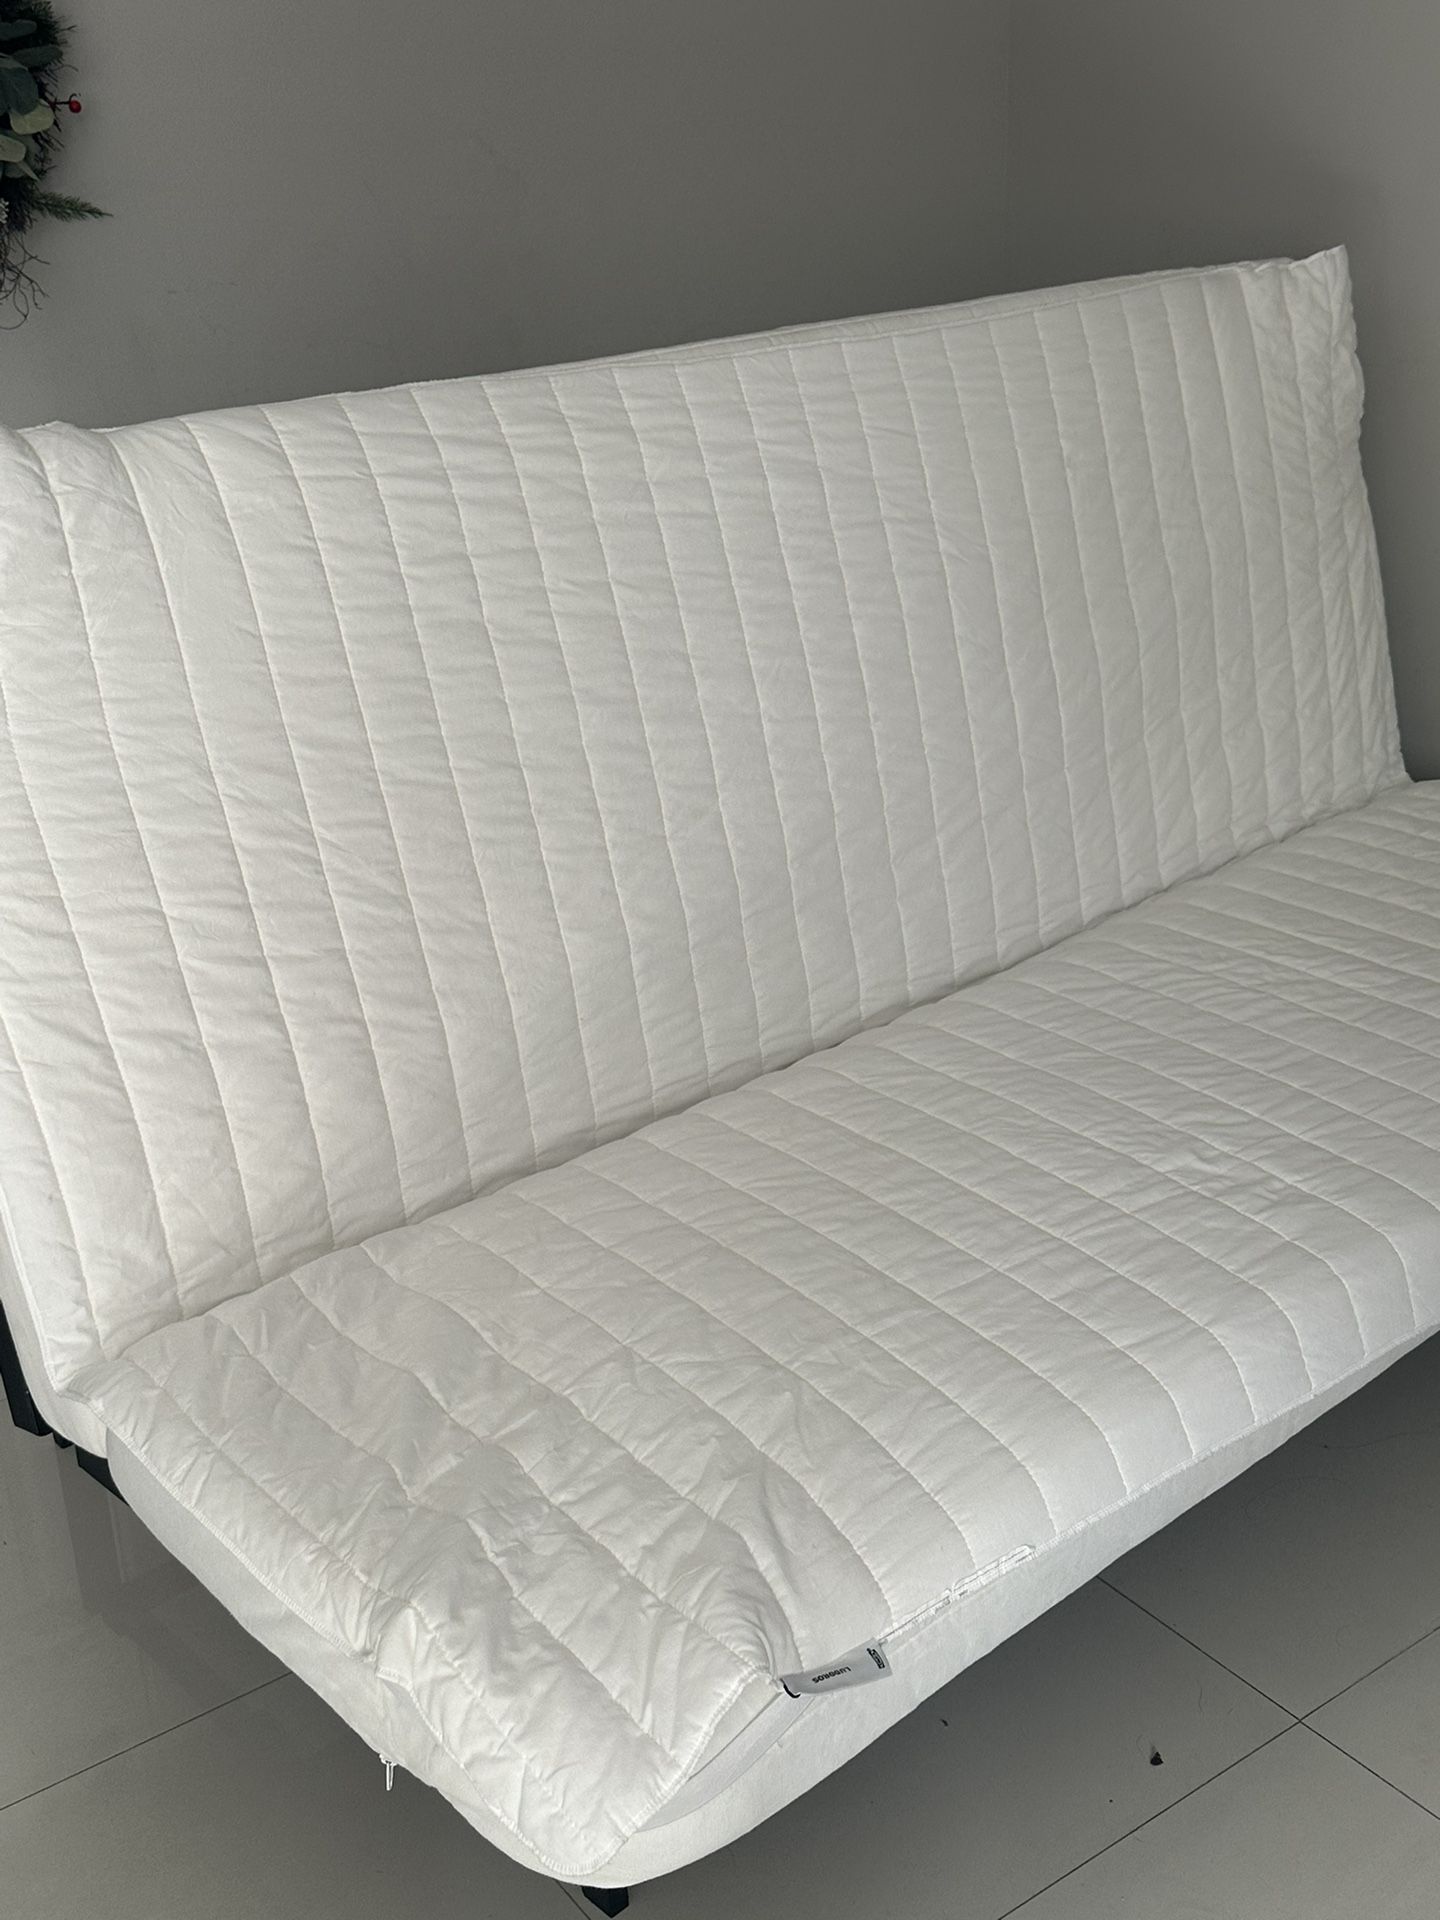 Sofa Cama Full